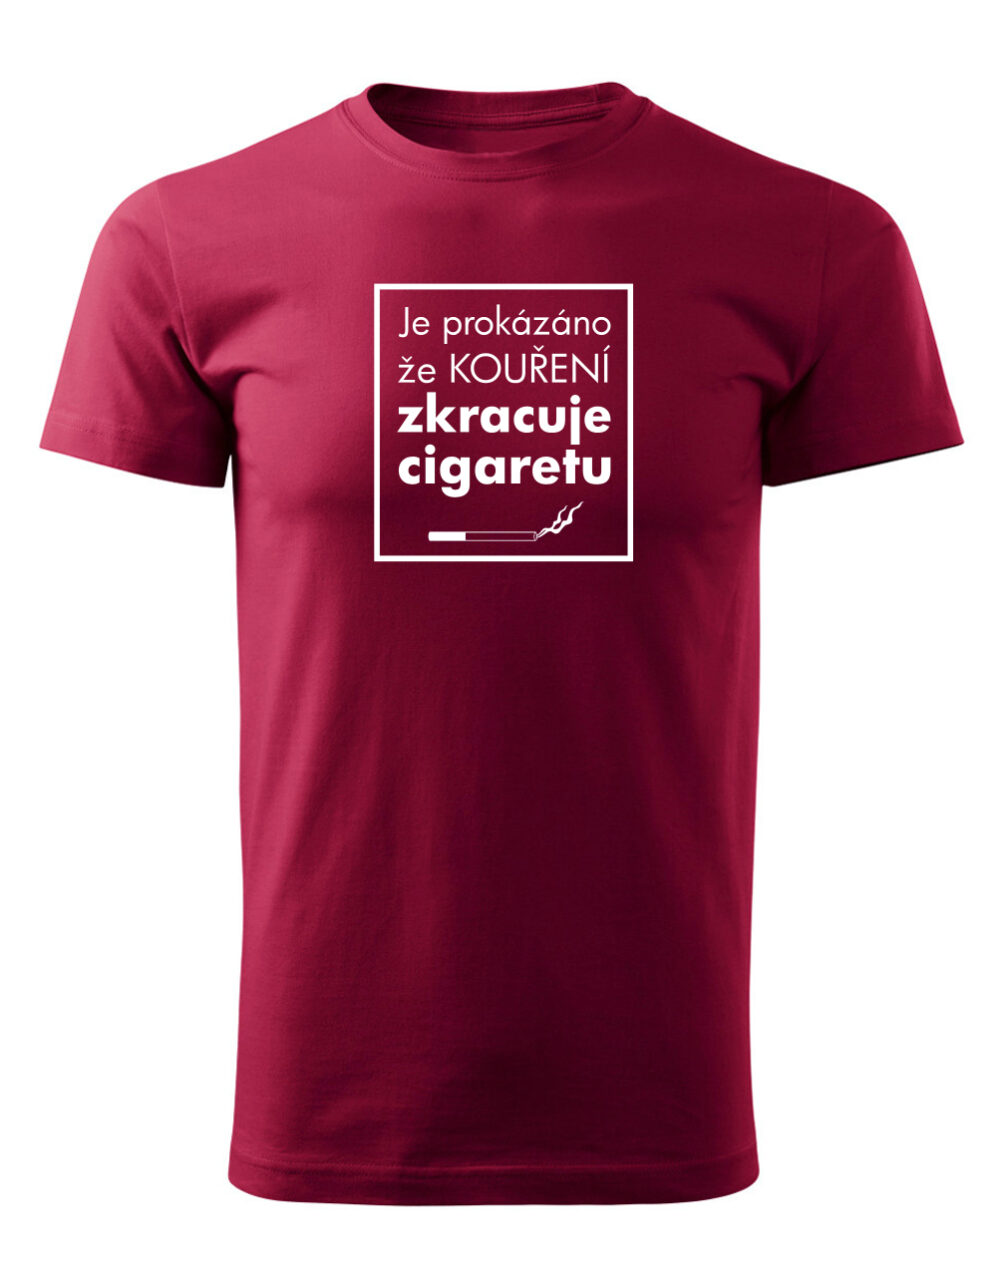 Pánské tričko s potiskem Kouření zkracuje cigaretu granátová